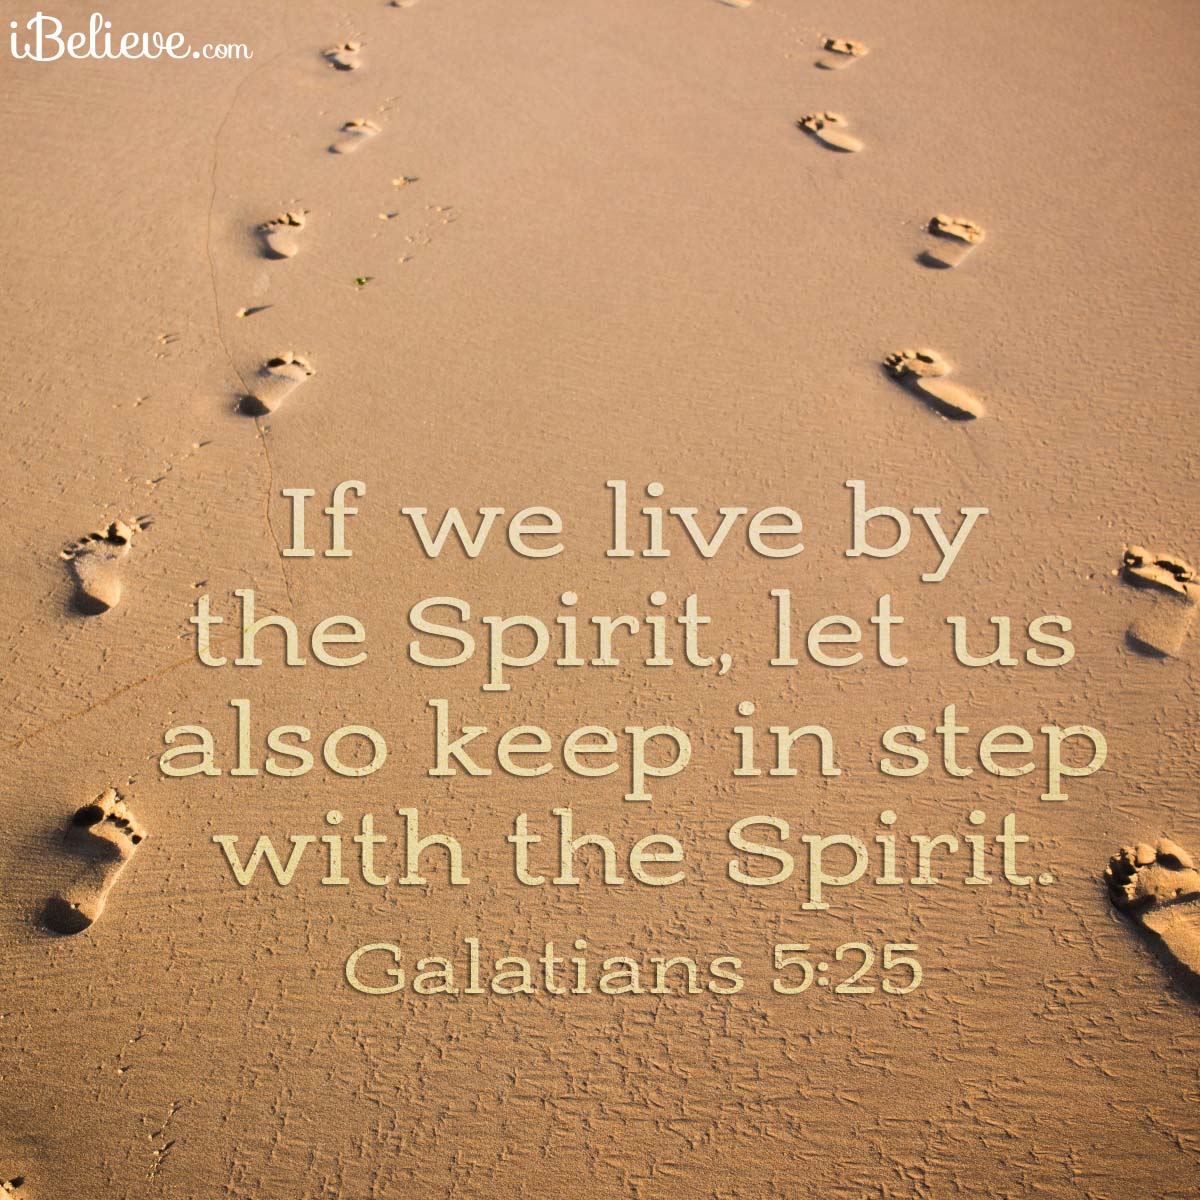 Galatians 5:25, inspirational image